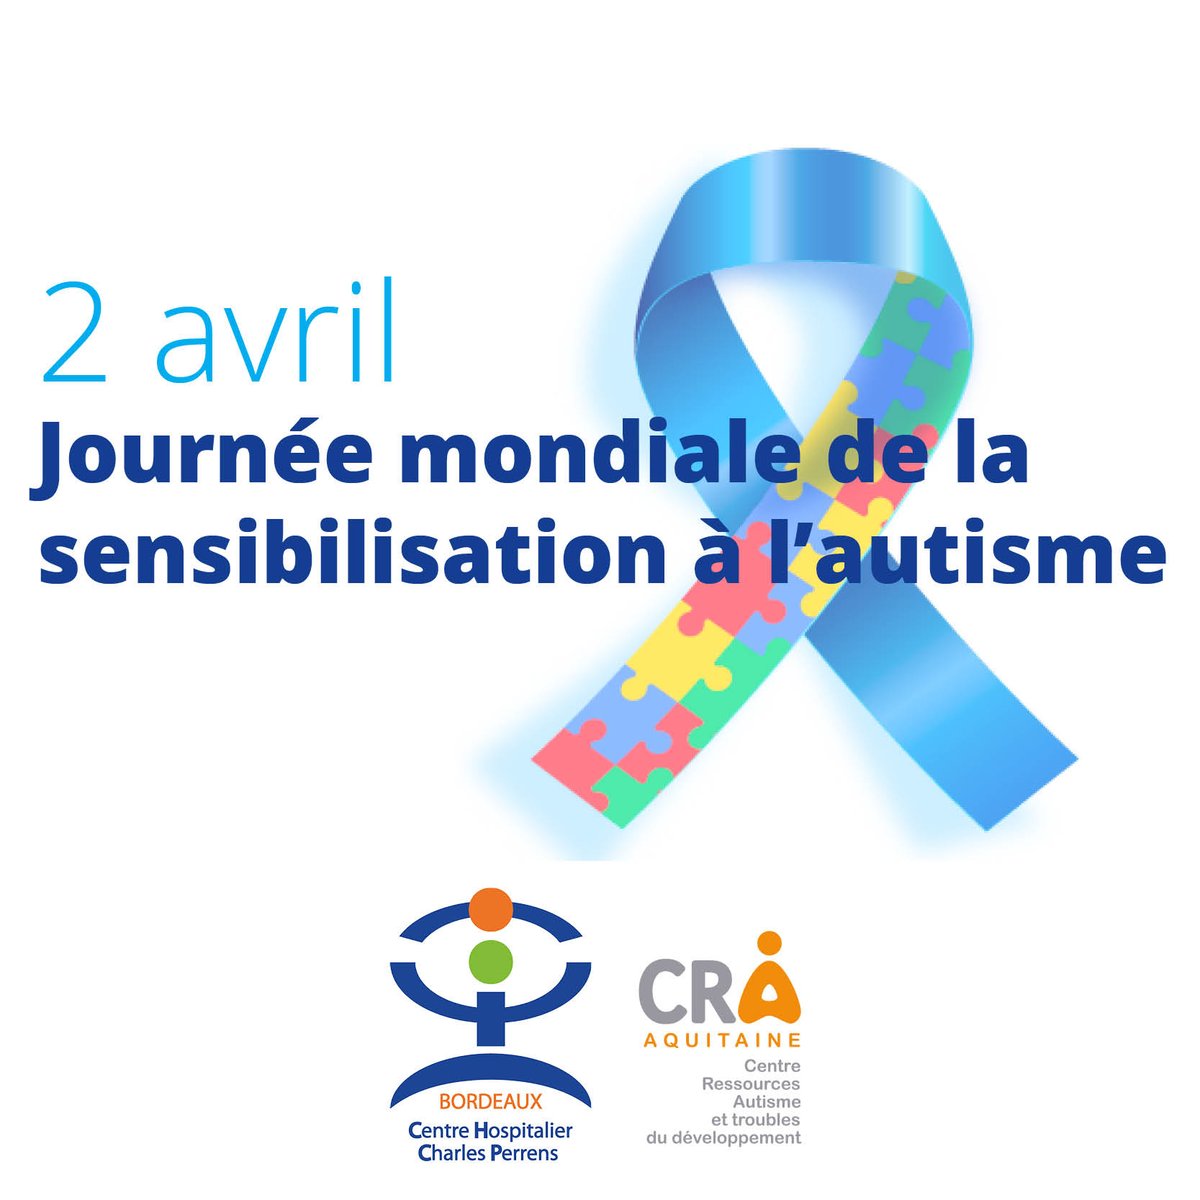 | Journée mondiale de la sensibilisation à l’autisme | L'occasion de rappeler que le @ch_perrens dispose d'un Centre Ressources Autisme (CRA) avec 6 antennes réparties sur le sud Nouvelle-Aquitaine. #Journeemondialedelautisme ➕d'infos ➡️ cra.ch-perrens.fr